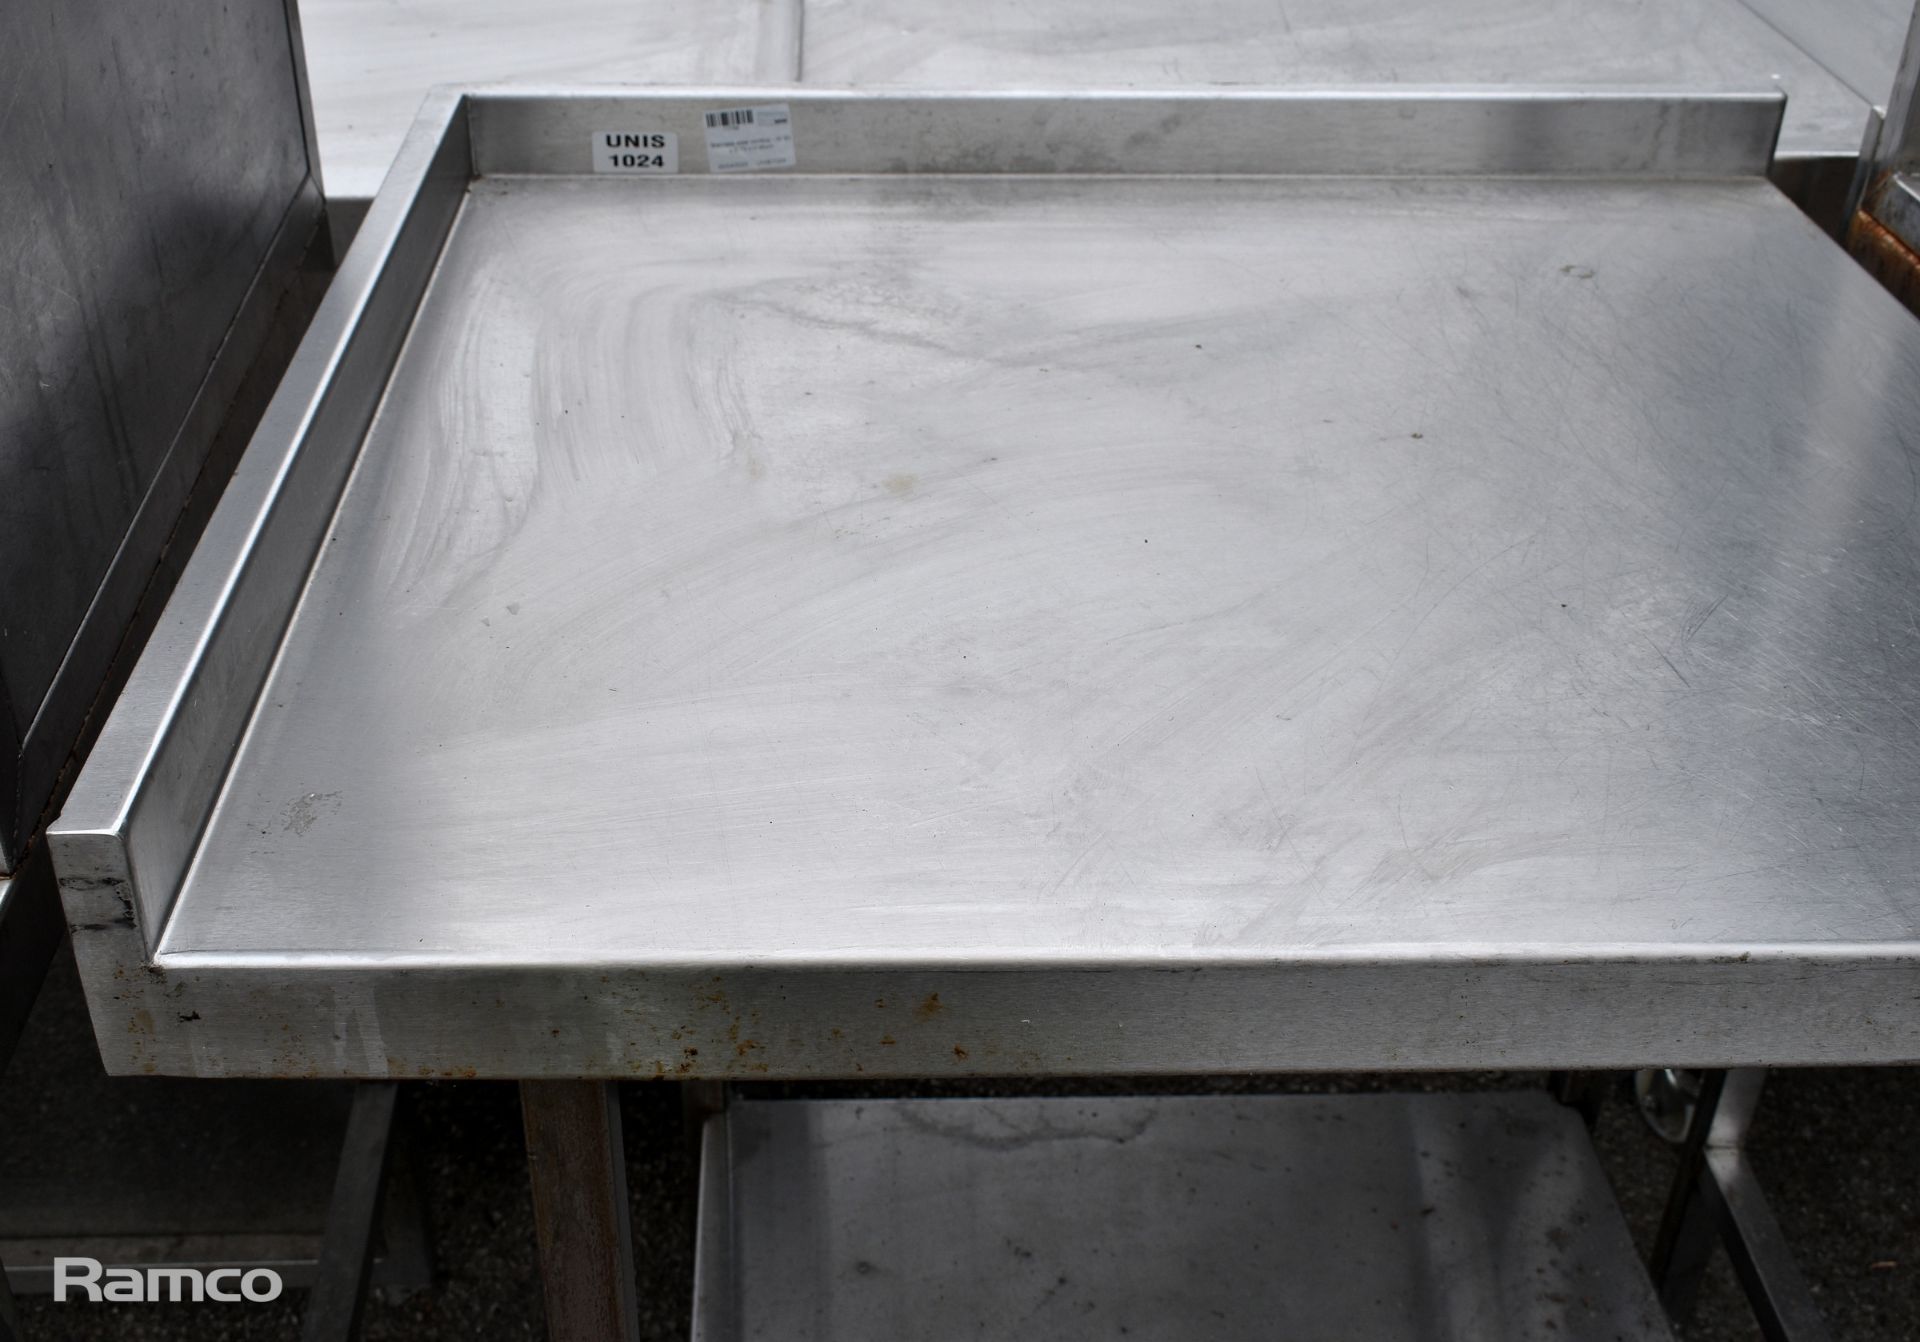 Stainless steel worktop - W 800 x D 730 x H 950mm - Bild 2 aus 3